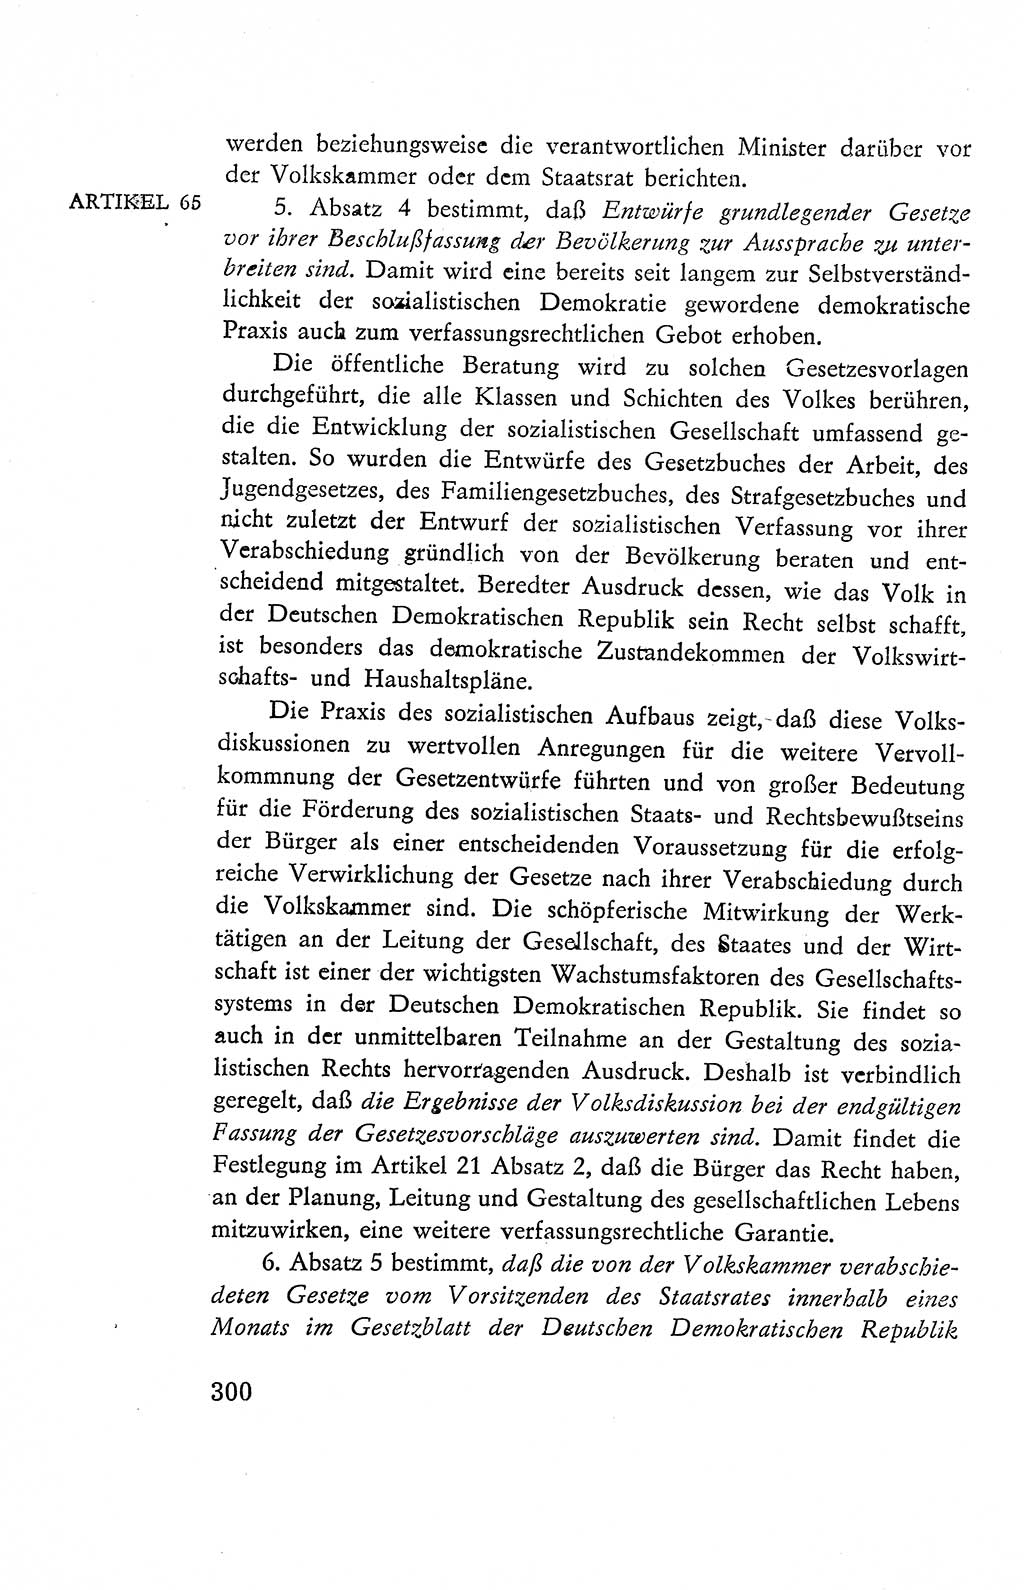 Verfassung der Deutschen Demokratischen Republik (DDR), Dokumente, Kommentar 1969, Band 2, Seite 300 (Verf. DDR Dok. Komm. 1969, Bd. 2, S. 300)